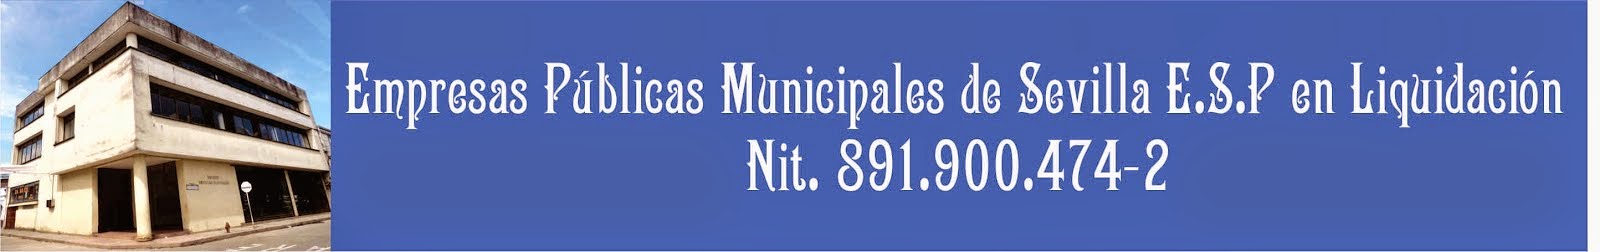 Empresas Públicas Municipales de Sevilla E:S.P. en Liquidación